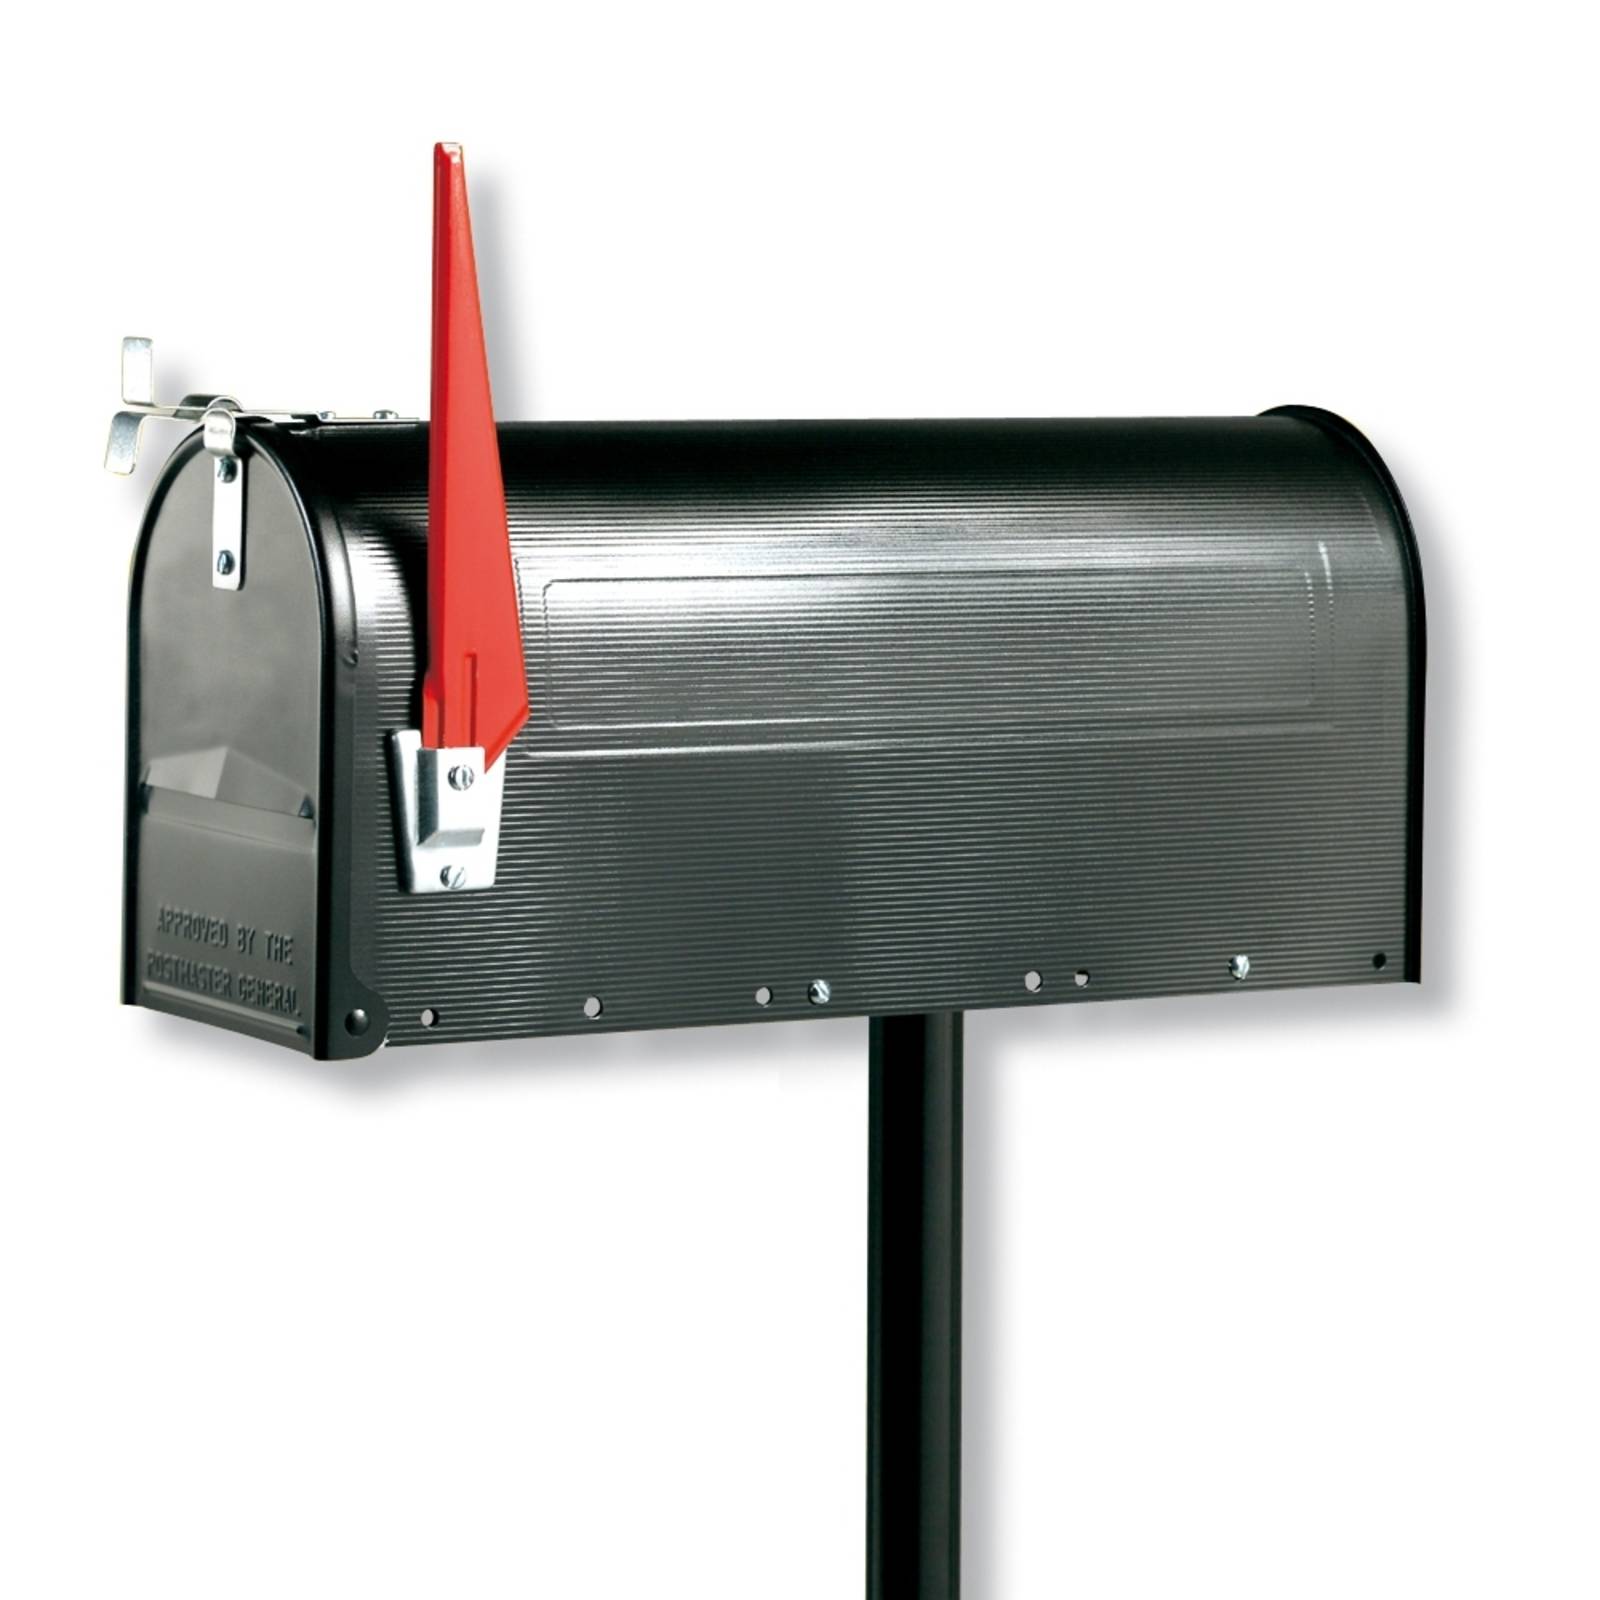 Volně stojící poštovní schránky